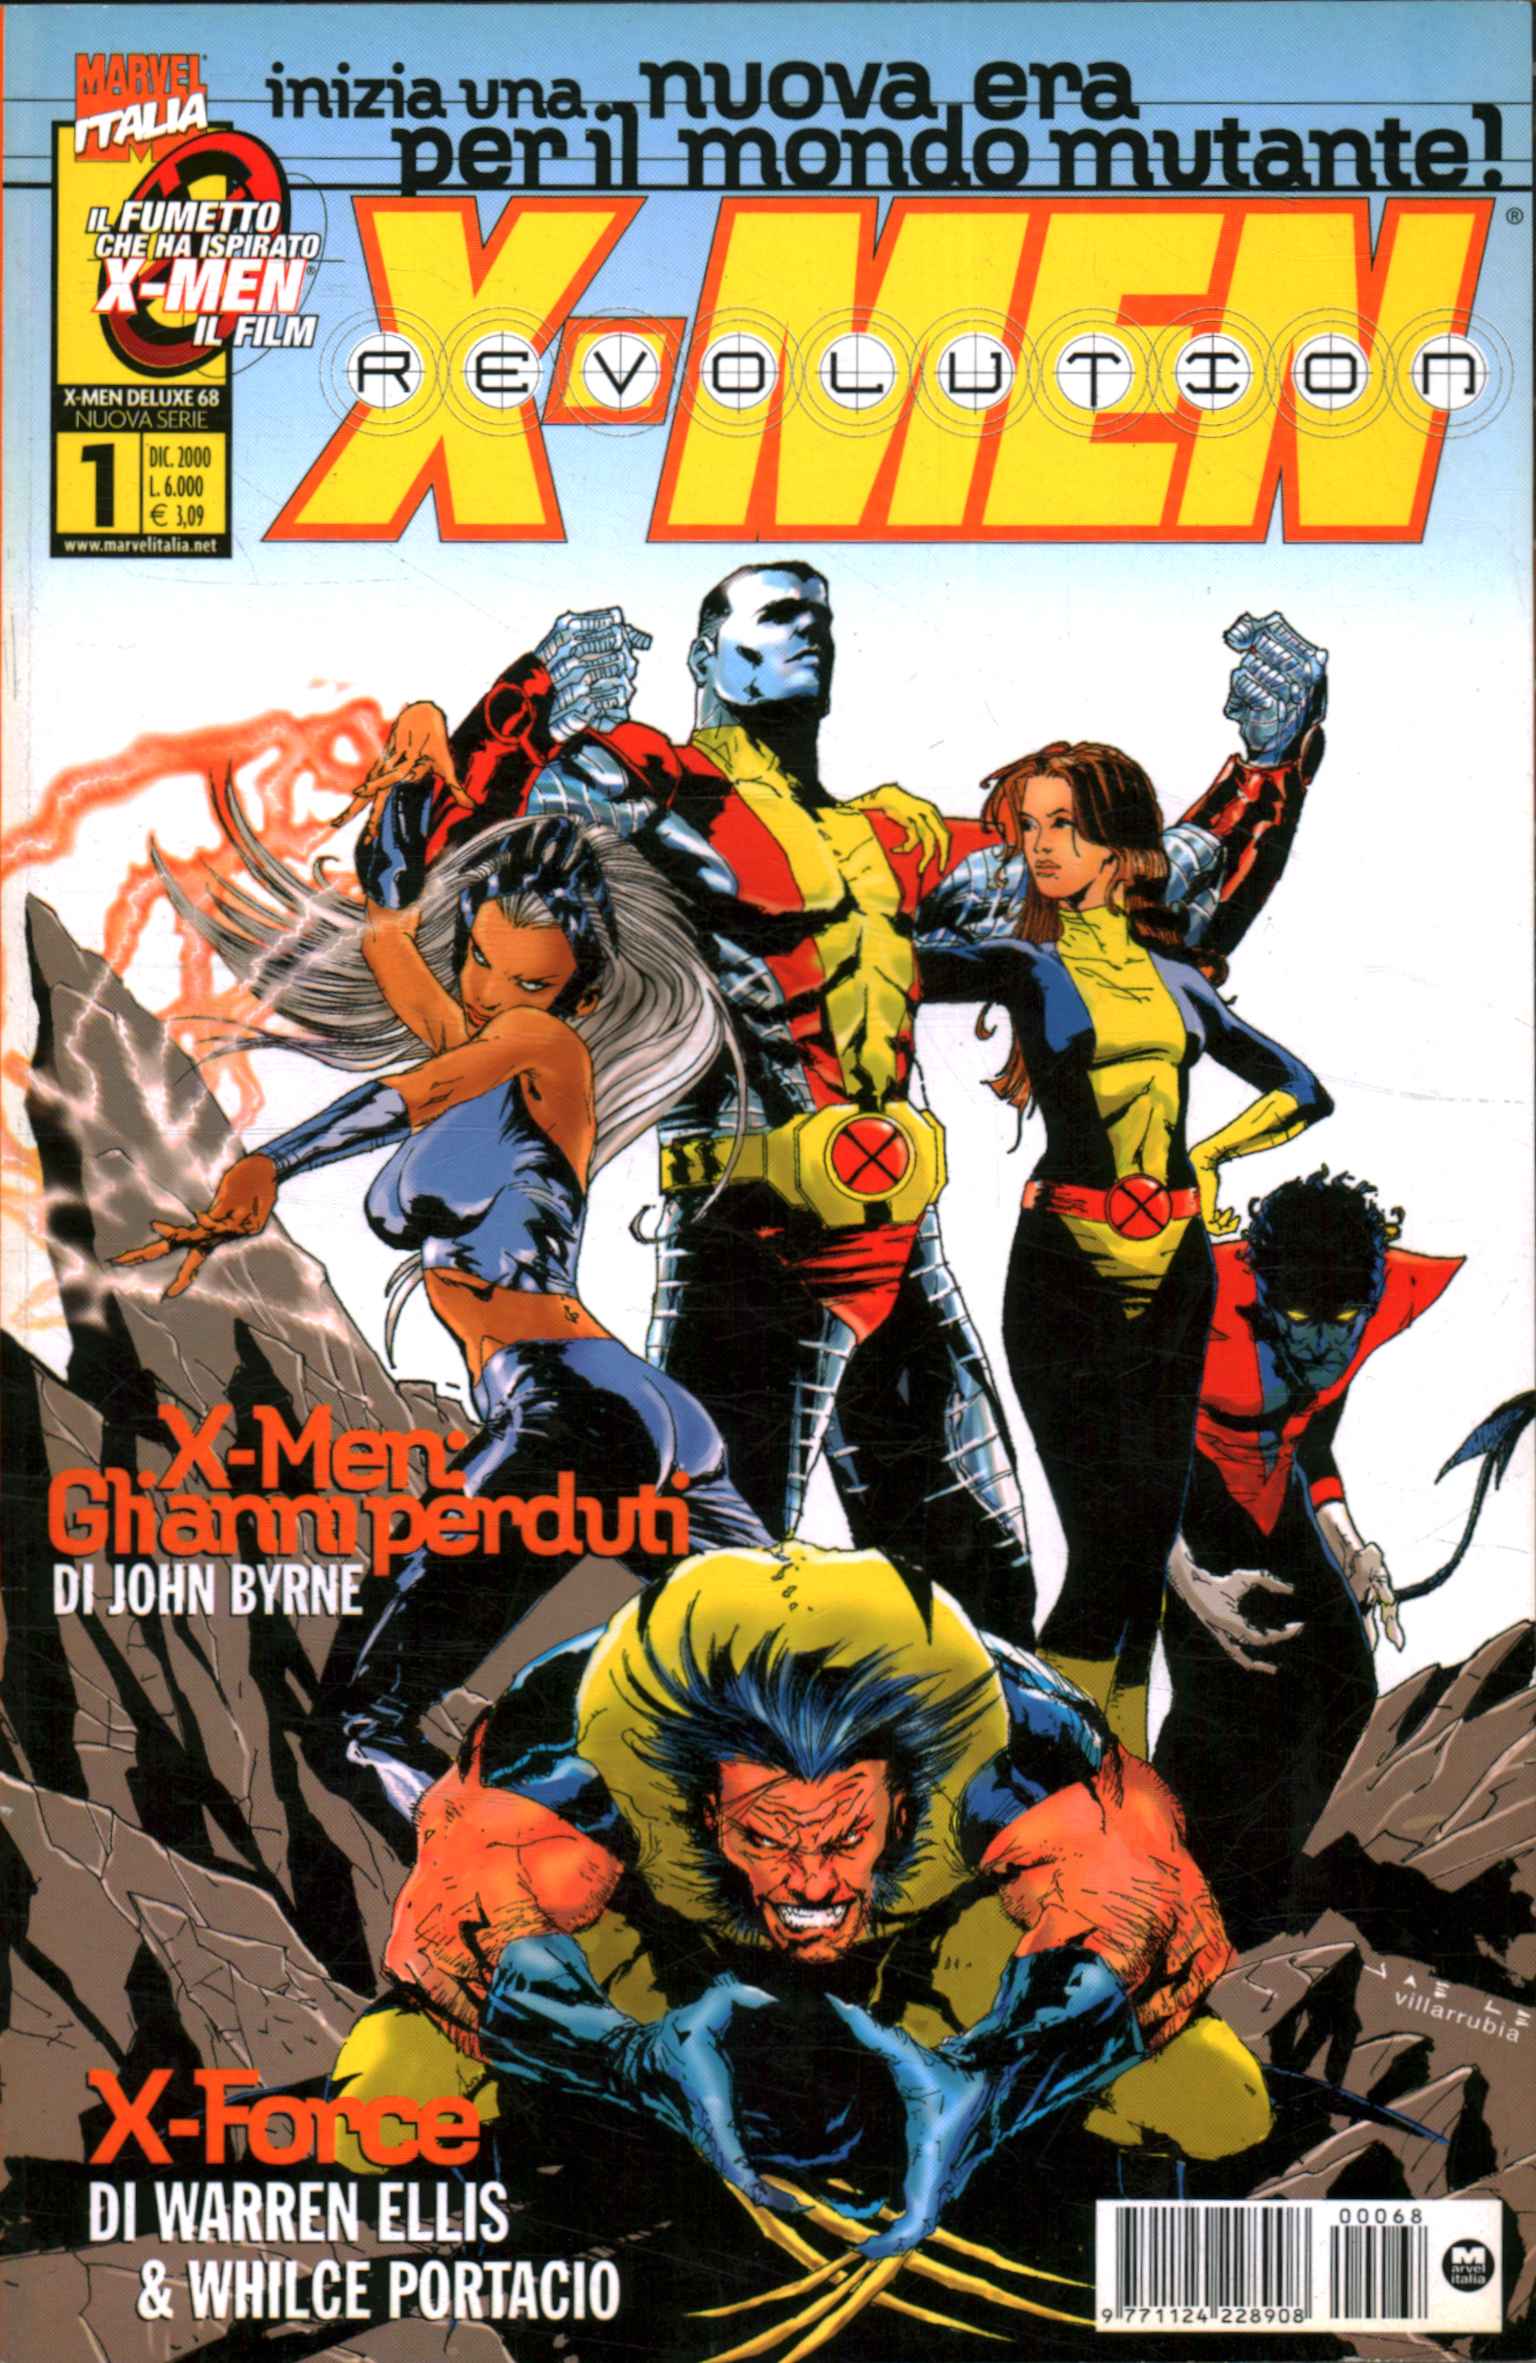 Révolution X-Men. Série complète (16 Vol